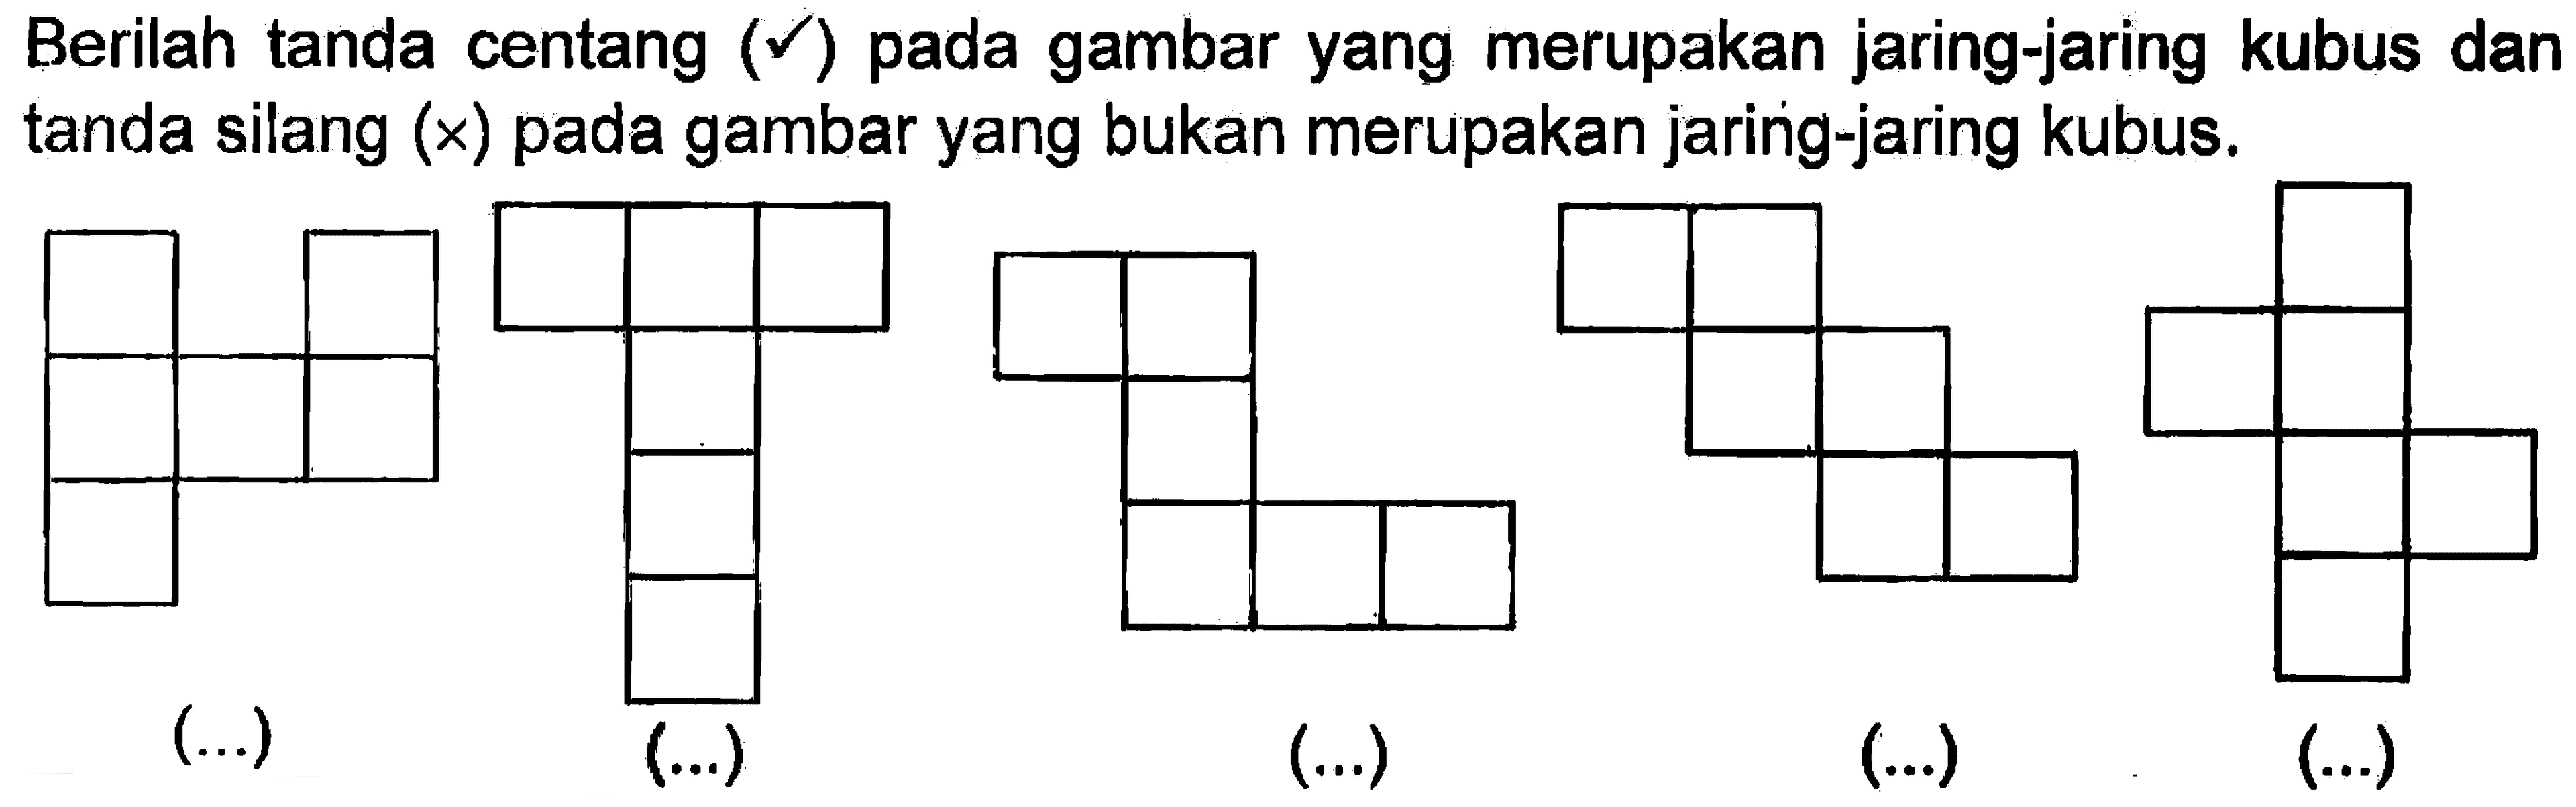 Berilah tanda centang (v) pada gambar yang merupakan jaring-jaring kubus dan tanda silang (x) pada gambar yang bukan merupakan jaring-jaring kubus. (...) (...) (...) (...) (...)